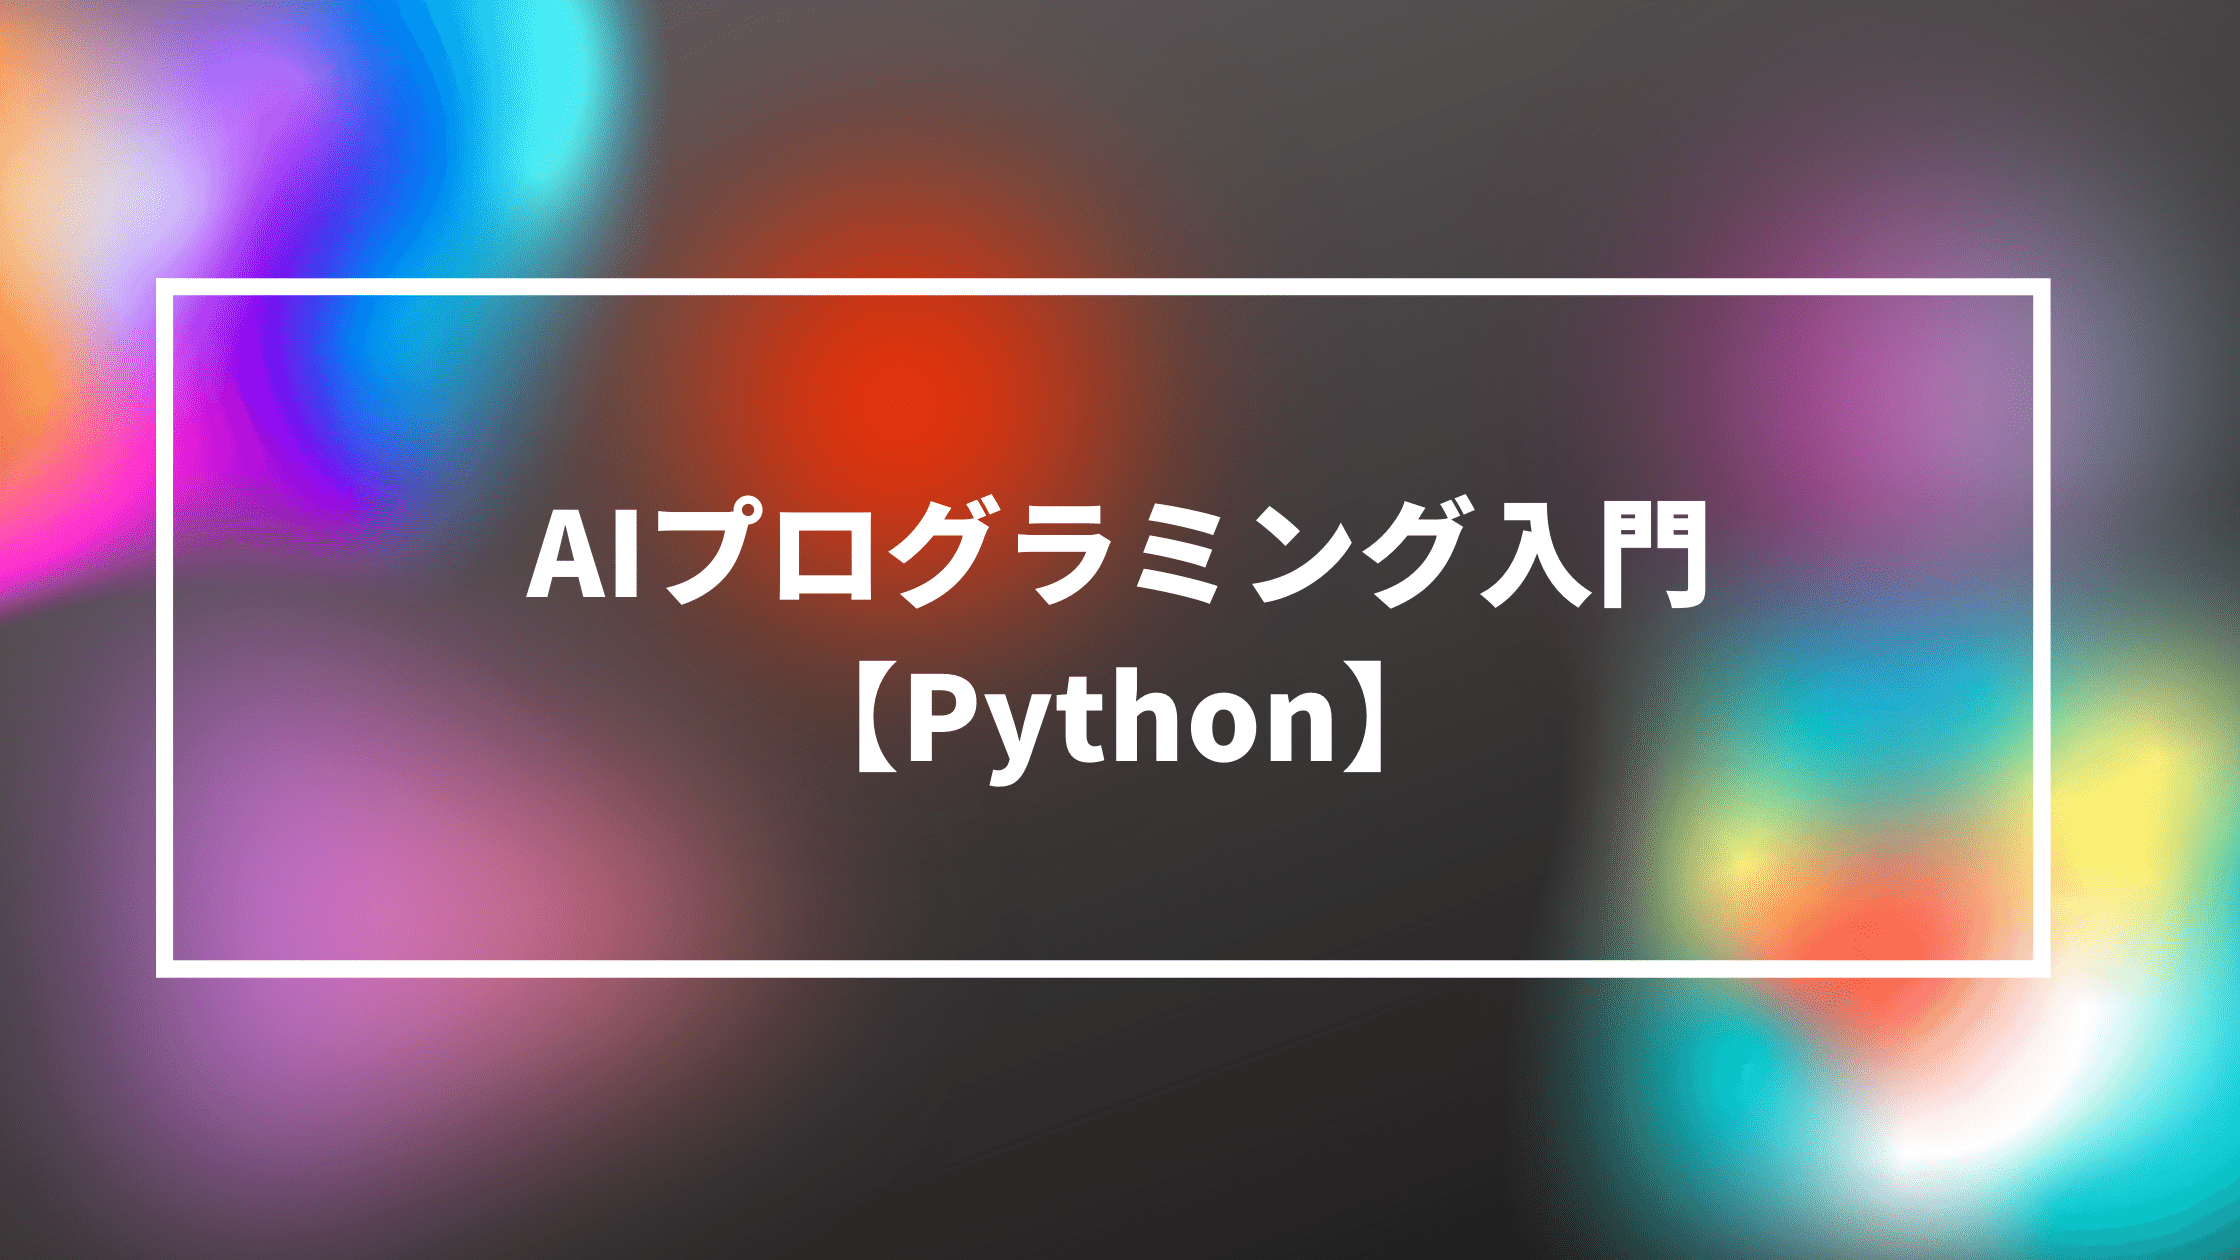 AIプログラミング入門【Python】